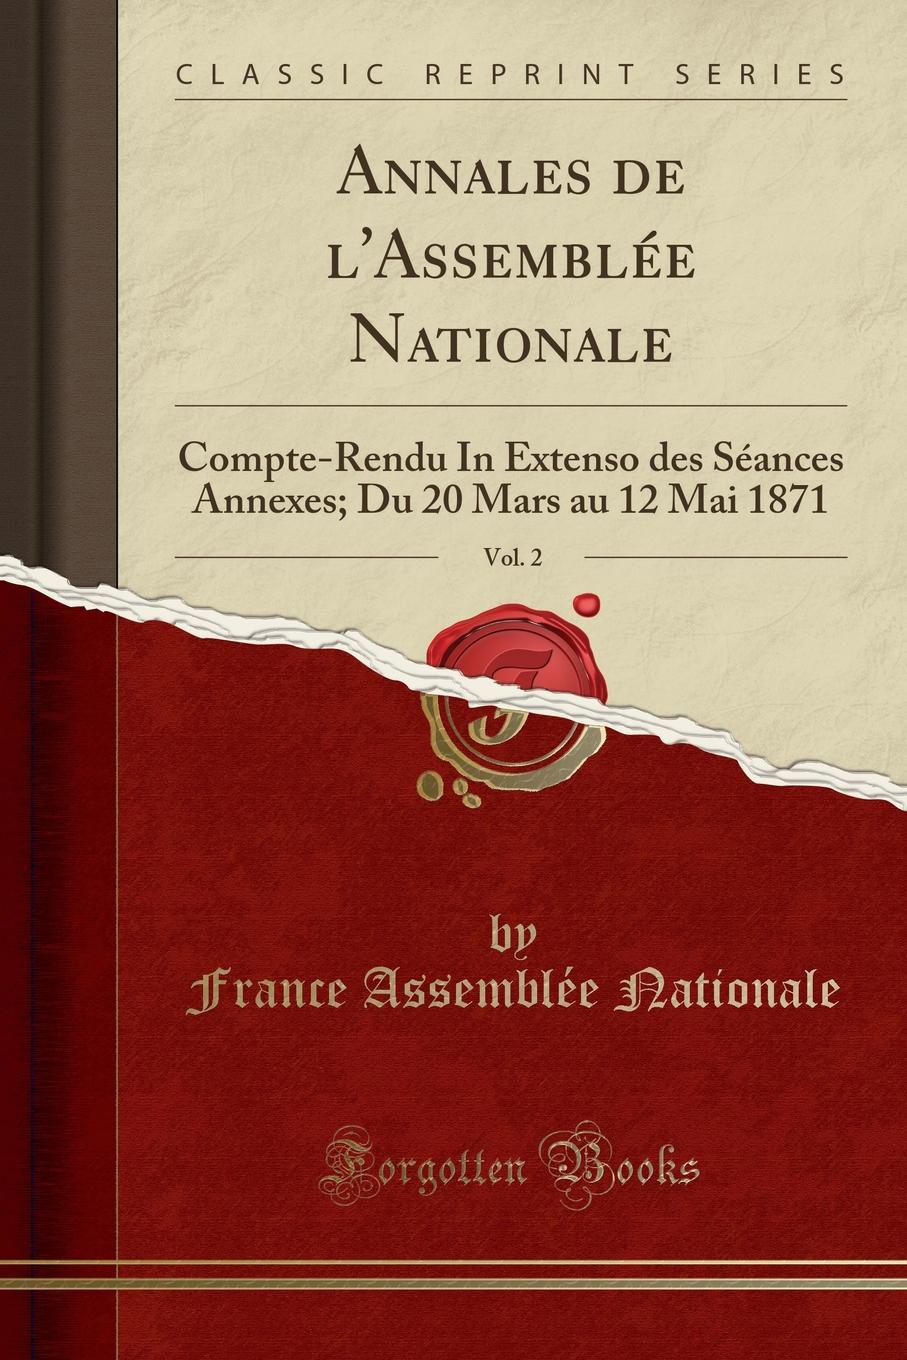 France Assemblée Nationale Annales de l.Assemblee Nationale, Vol. 2. Compte-Rendu In Extenso des Seances Annexes; Du 20 Mars au 12 Mai 1871 (Classic Reprint)